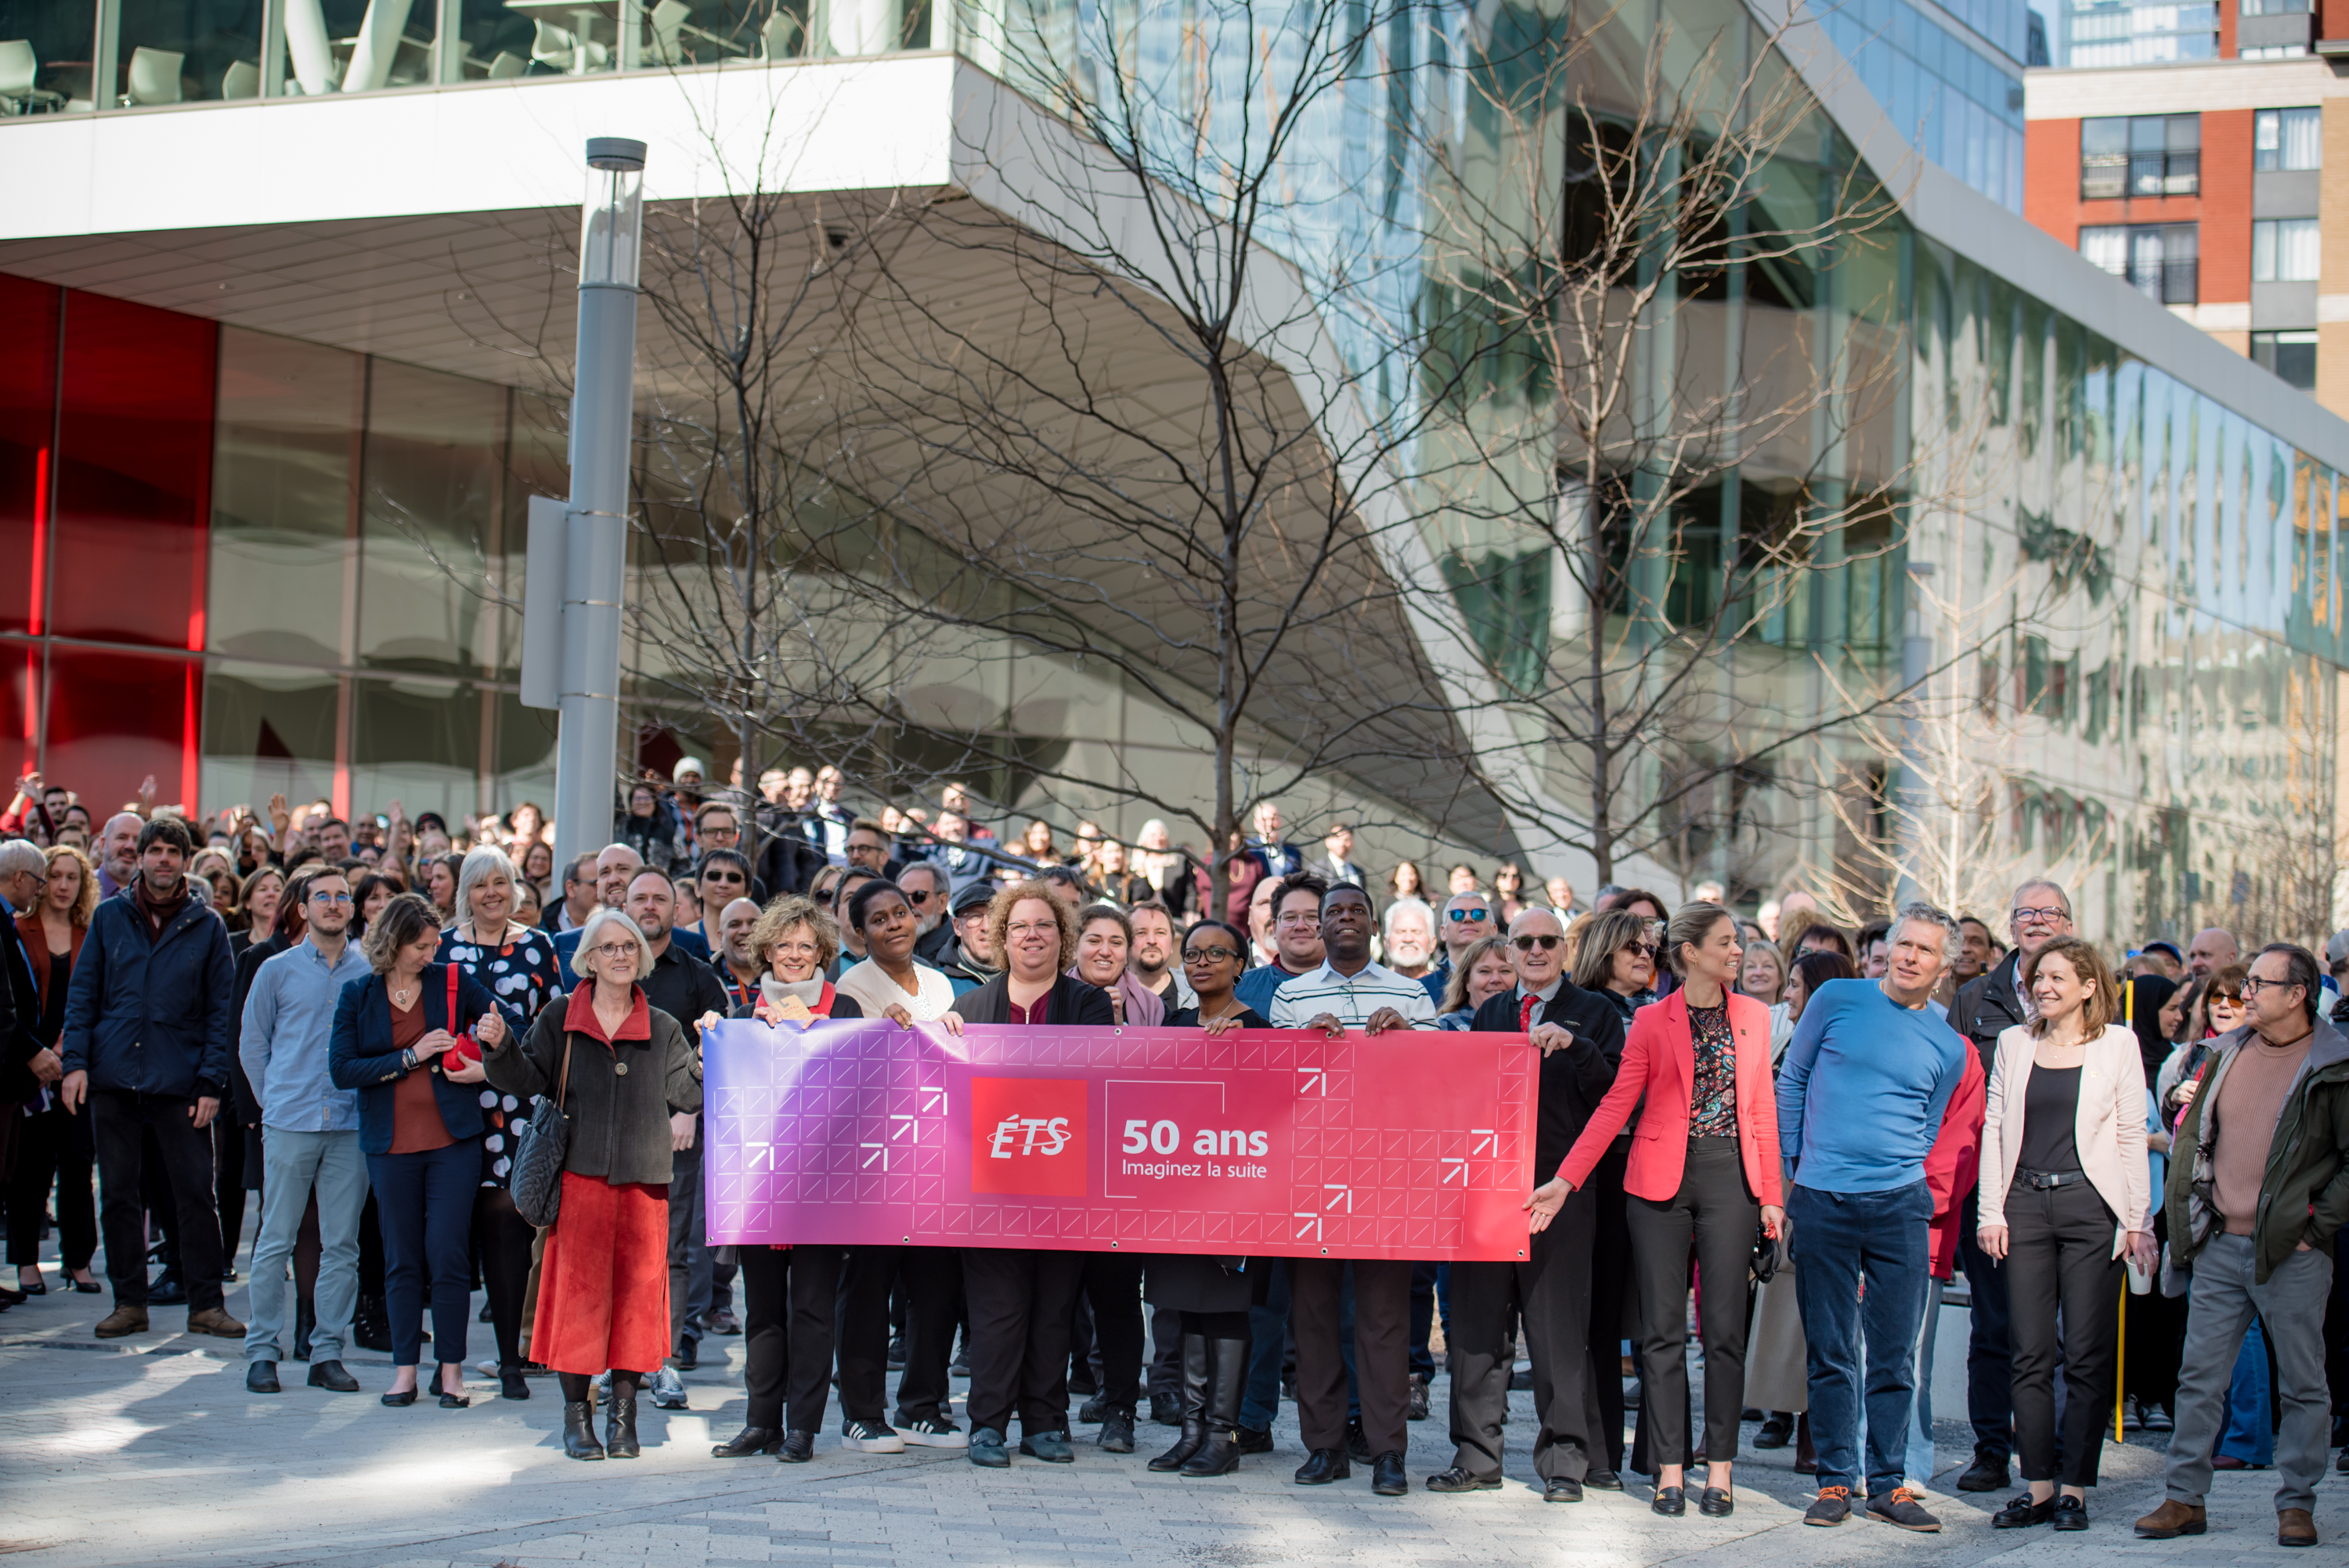 Groupe célébrant les 50 ans de l'ÉTS avec une bannière, devant un bâtiment moderne.